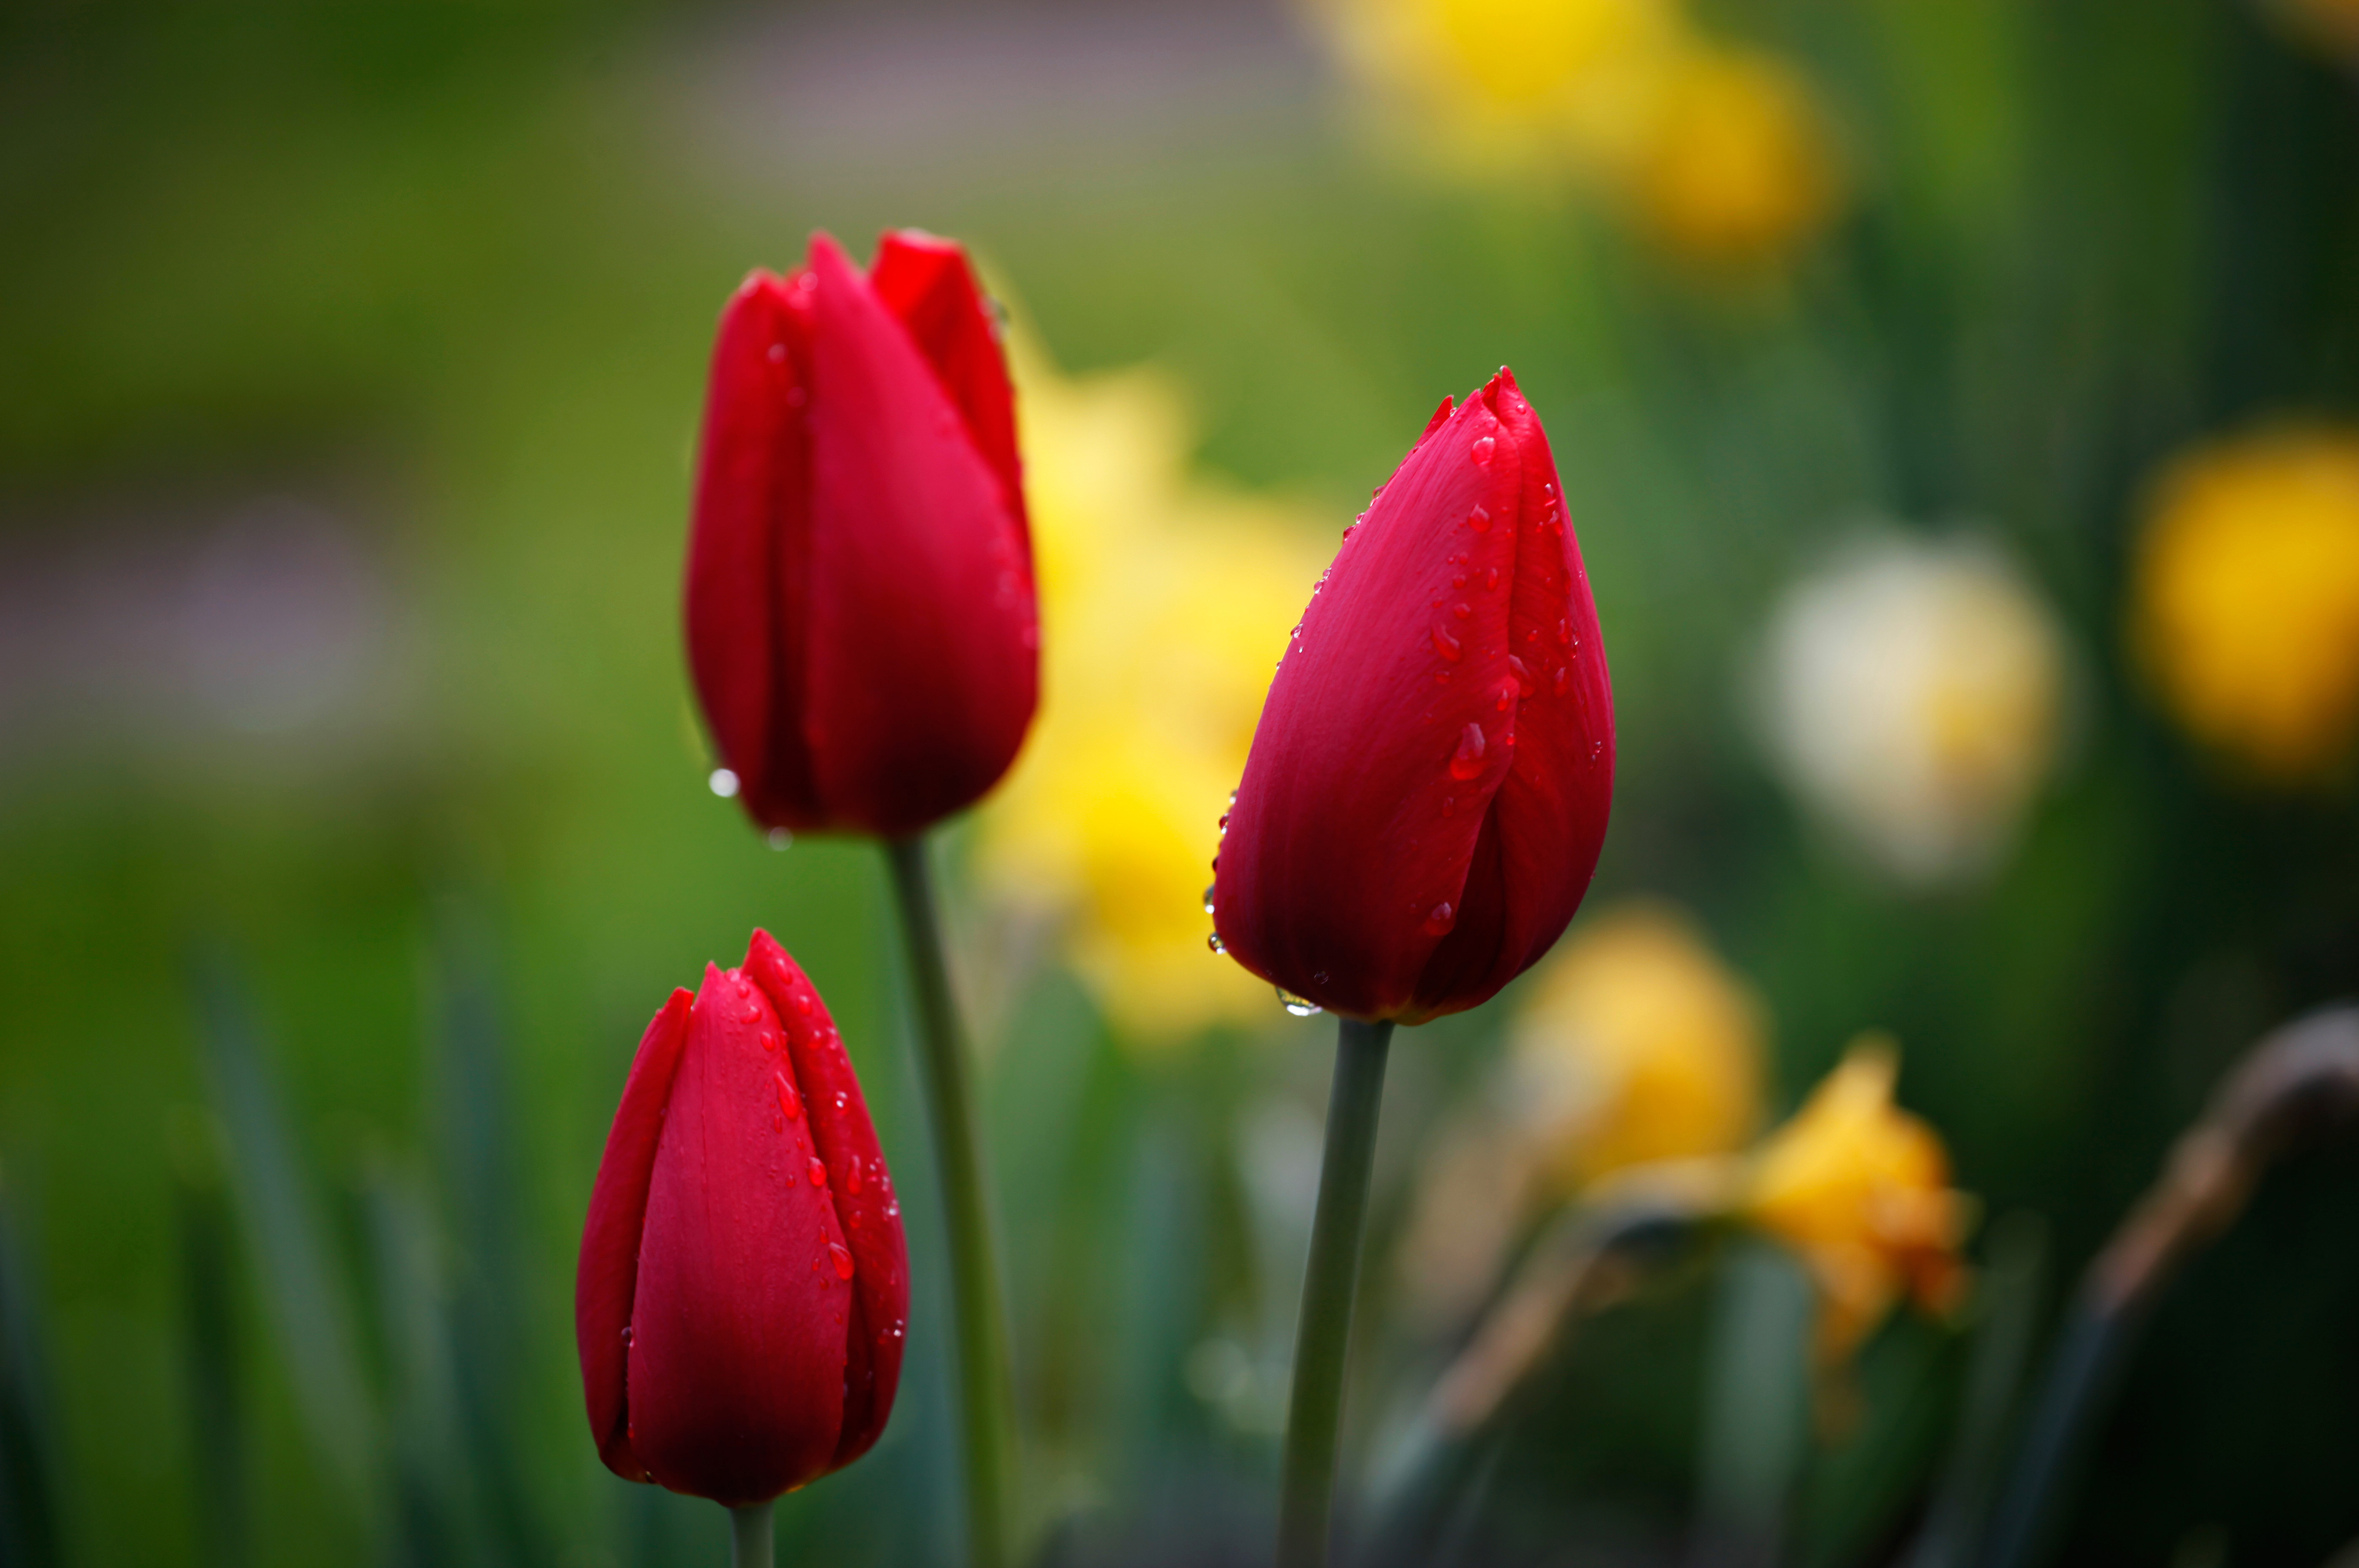 Обои на телефон красивые тюльпаны. Тюльпан drooping. Красные тюльпаны бутоны. Lola Tulipa. Красные весенние цветы.